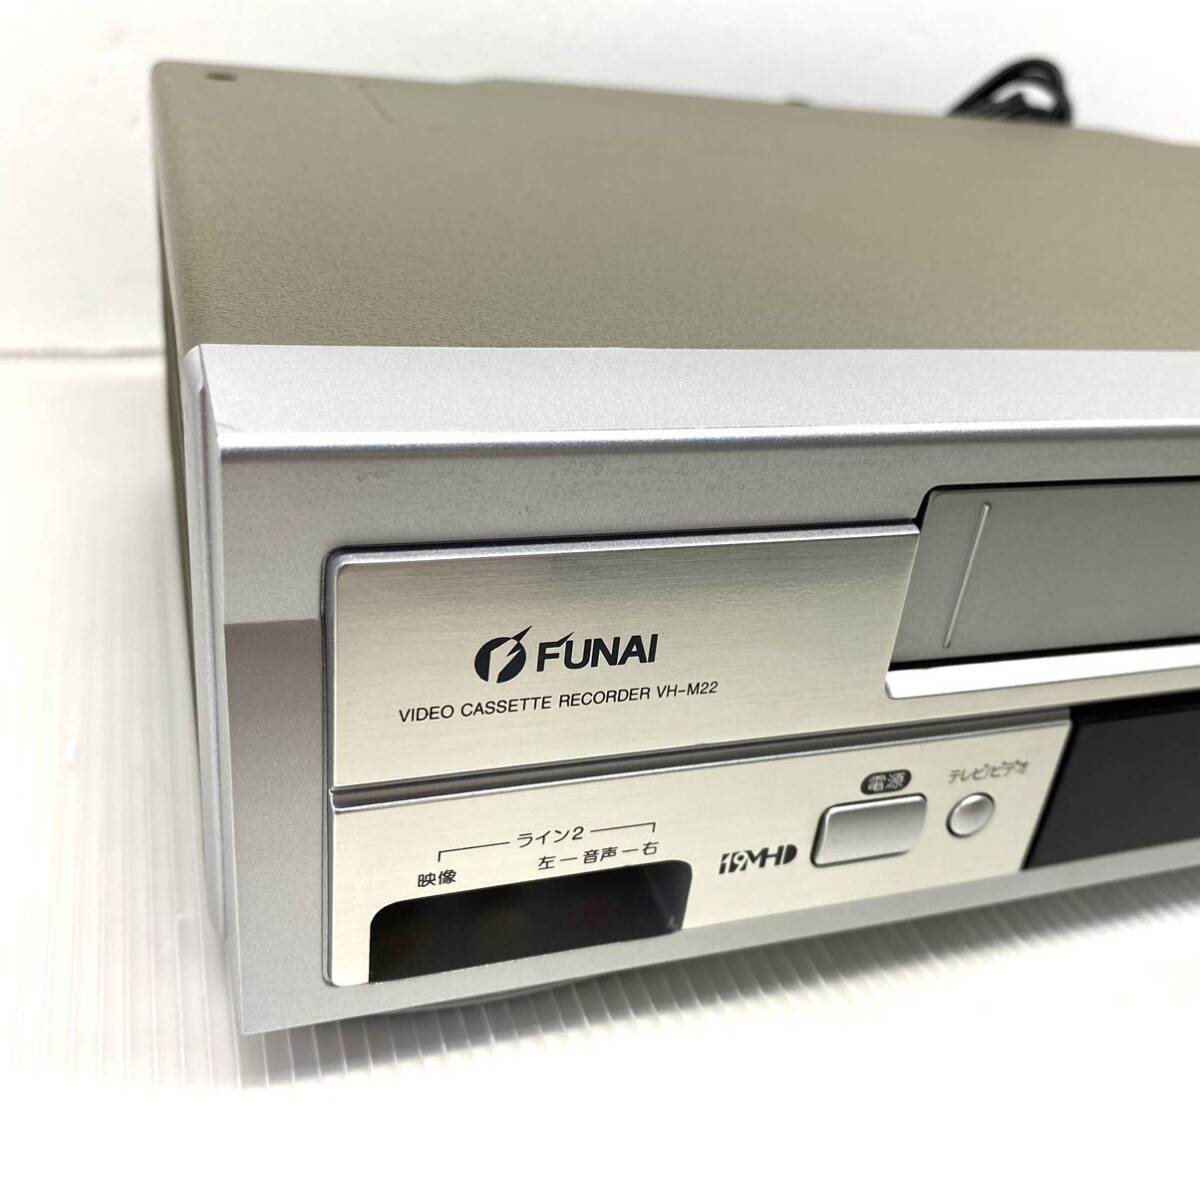 【メンテナンス済み】FUNAI VHSビデオデッキ VH-M22 新品ゴムベルト グリスアップ 動作保証 リモコン付き 迅速発送